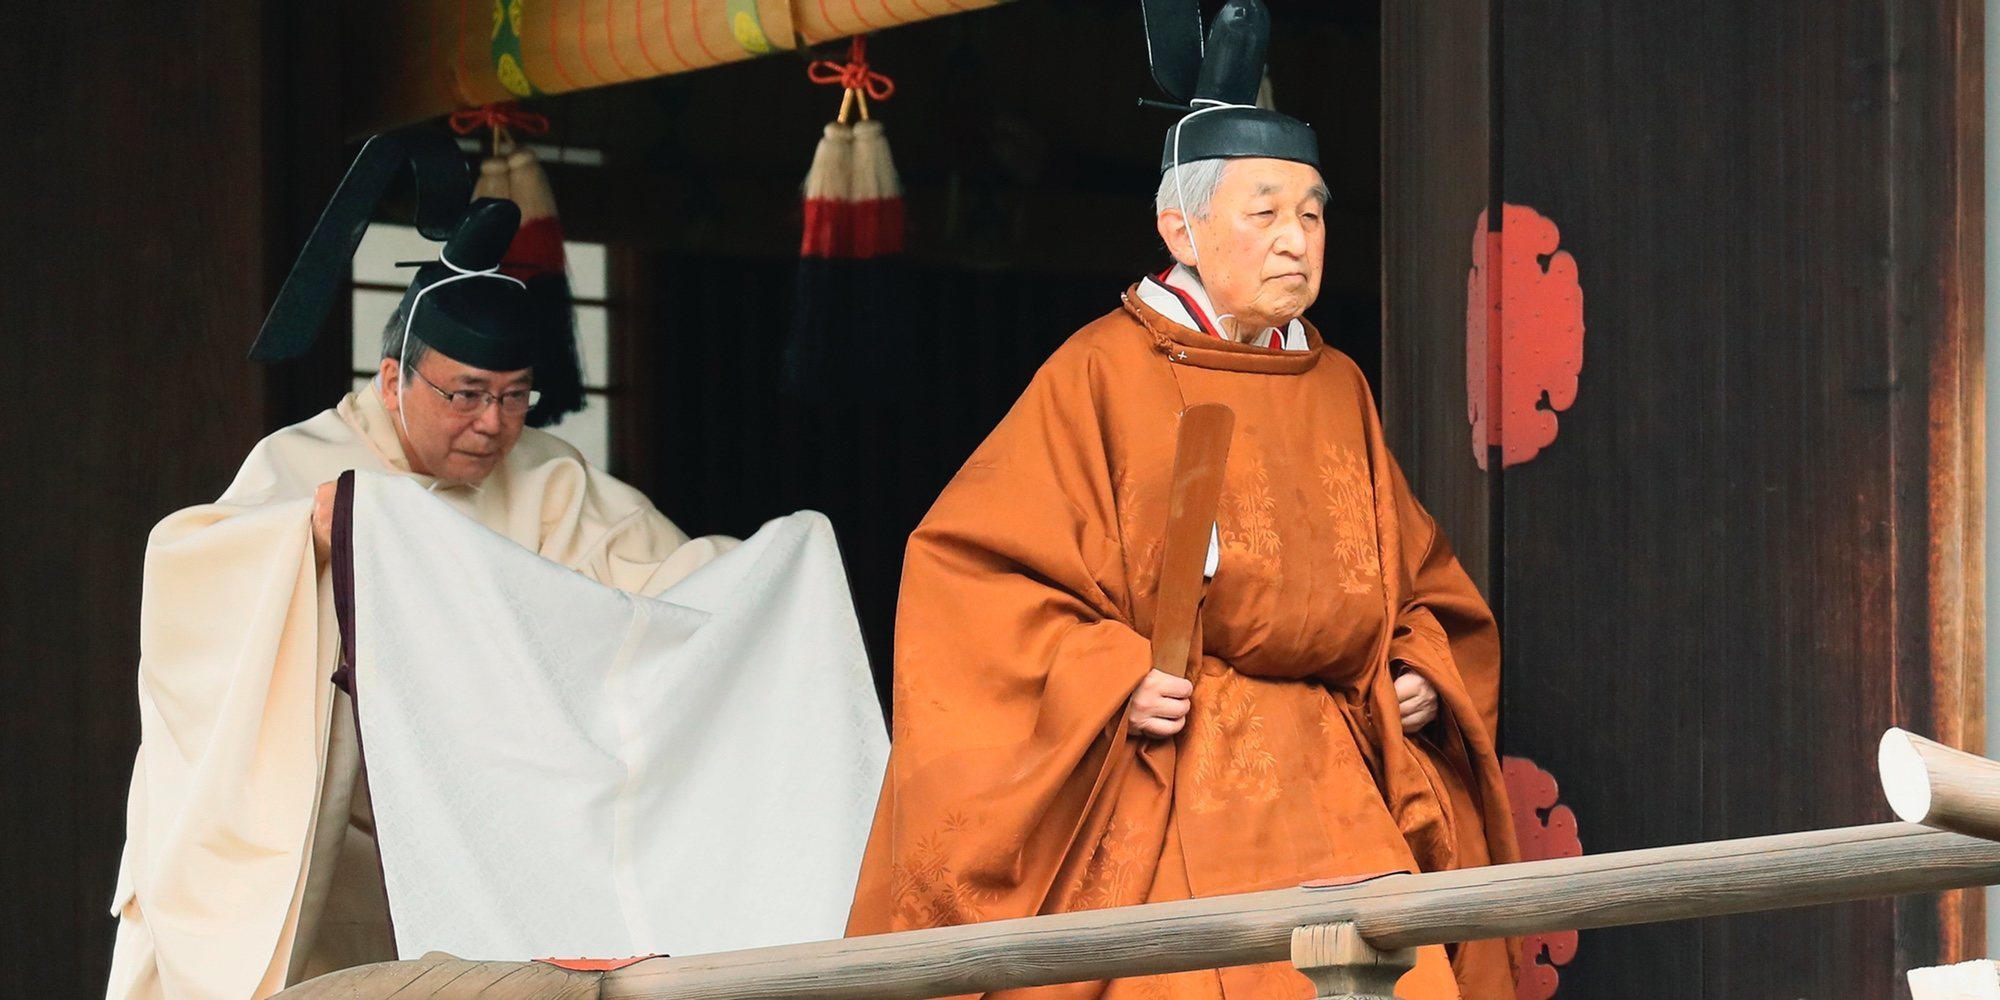 Comienza la ceremonia de abdicación del Emperador Akihito de Japón tras 30 años de reinado